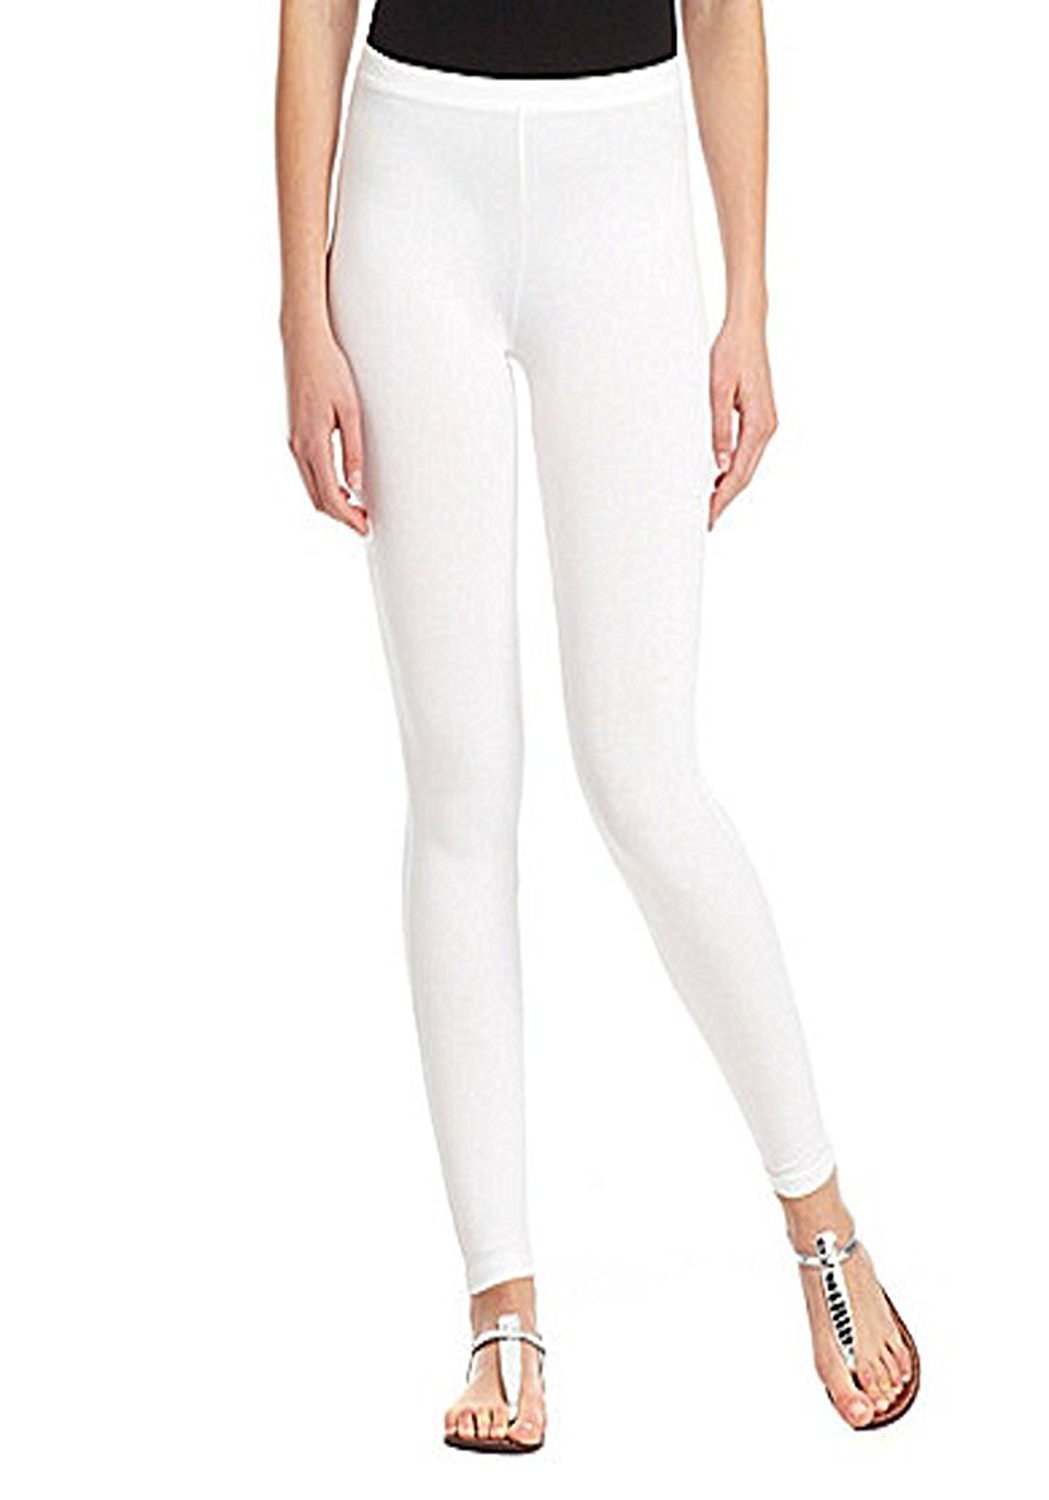 white cotton leggings